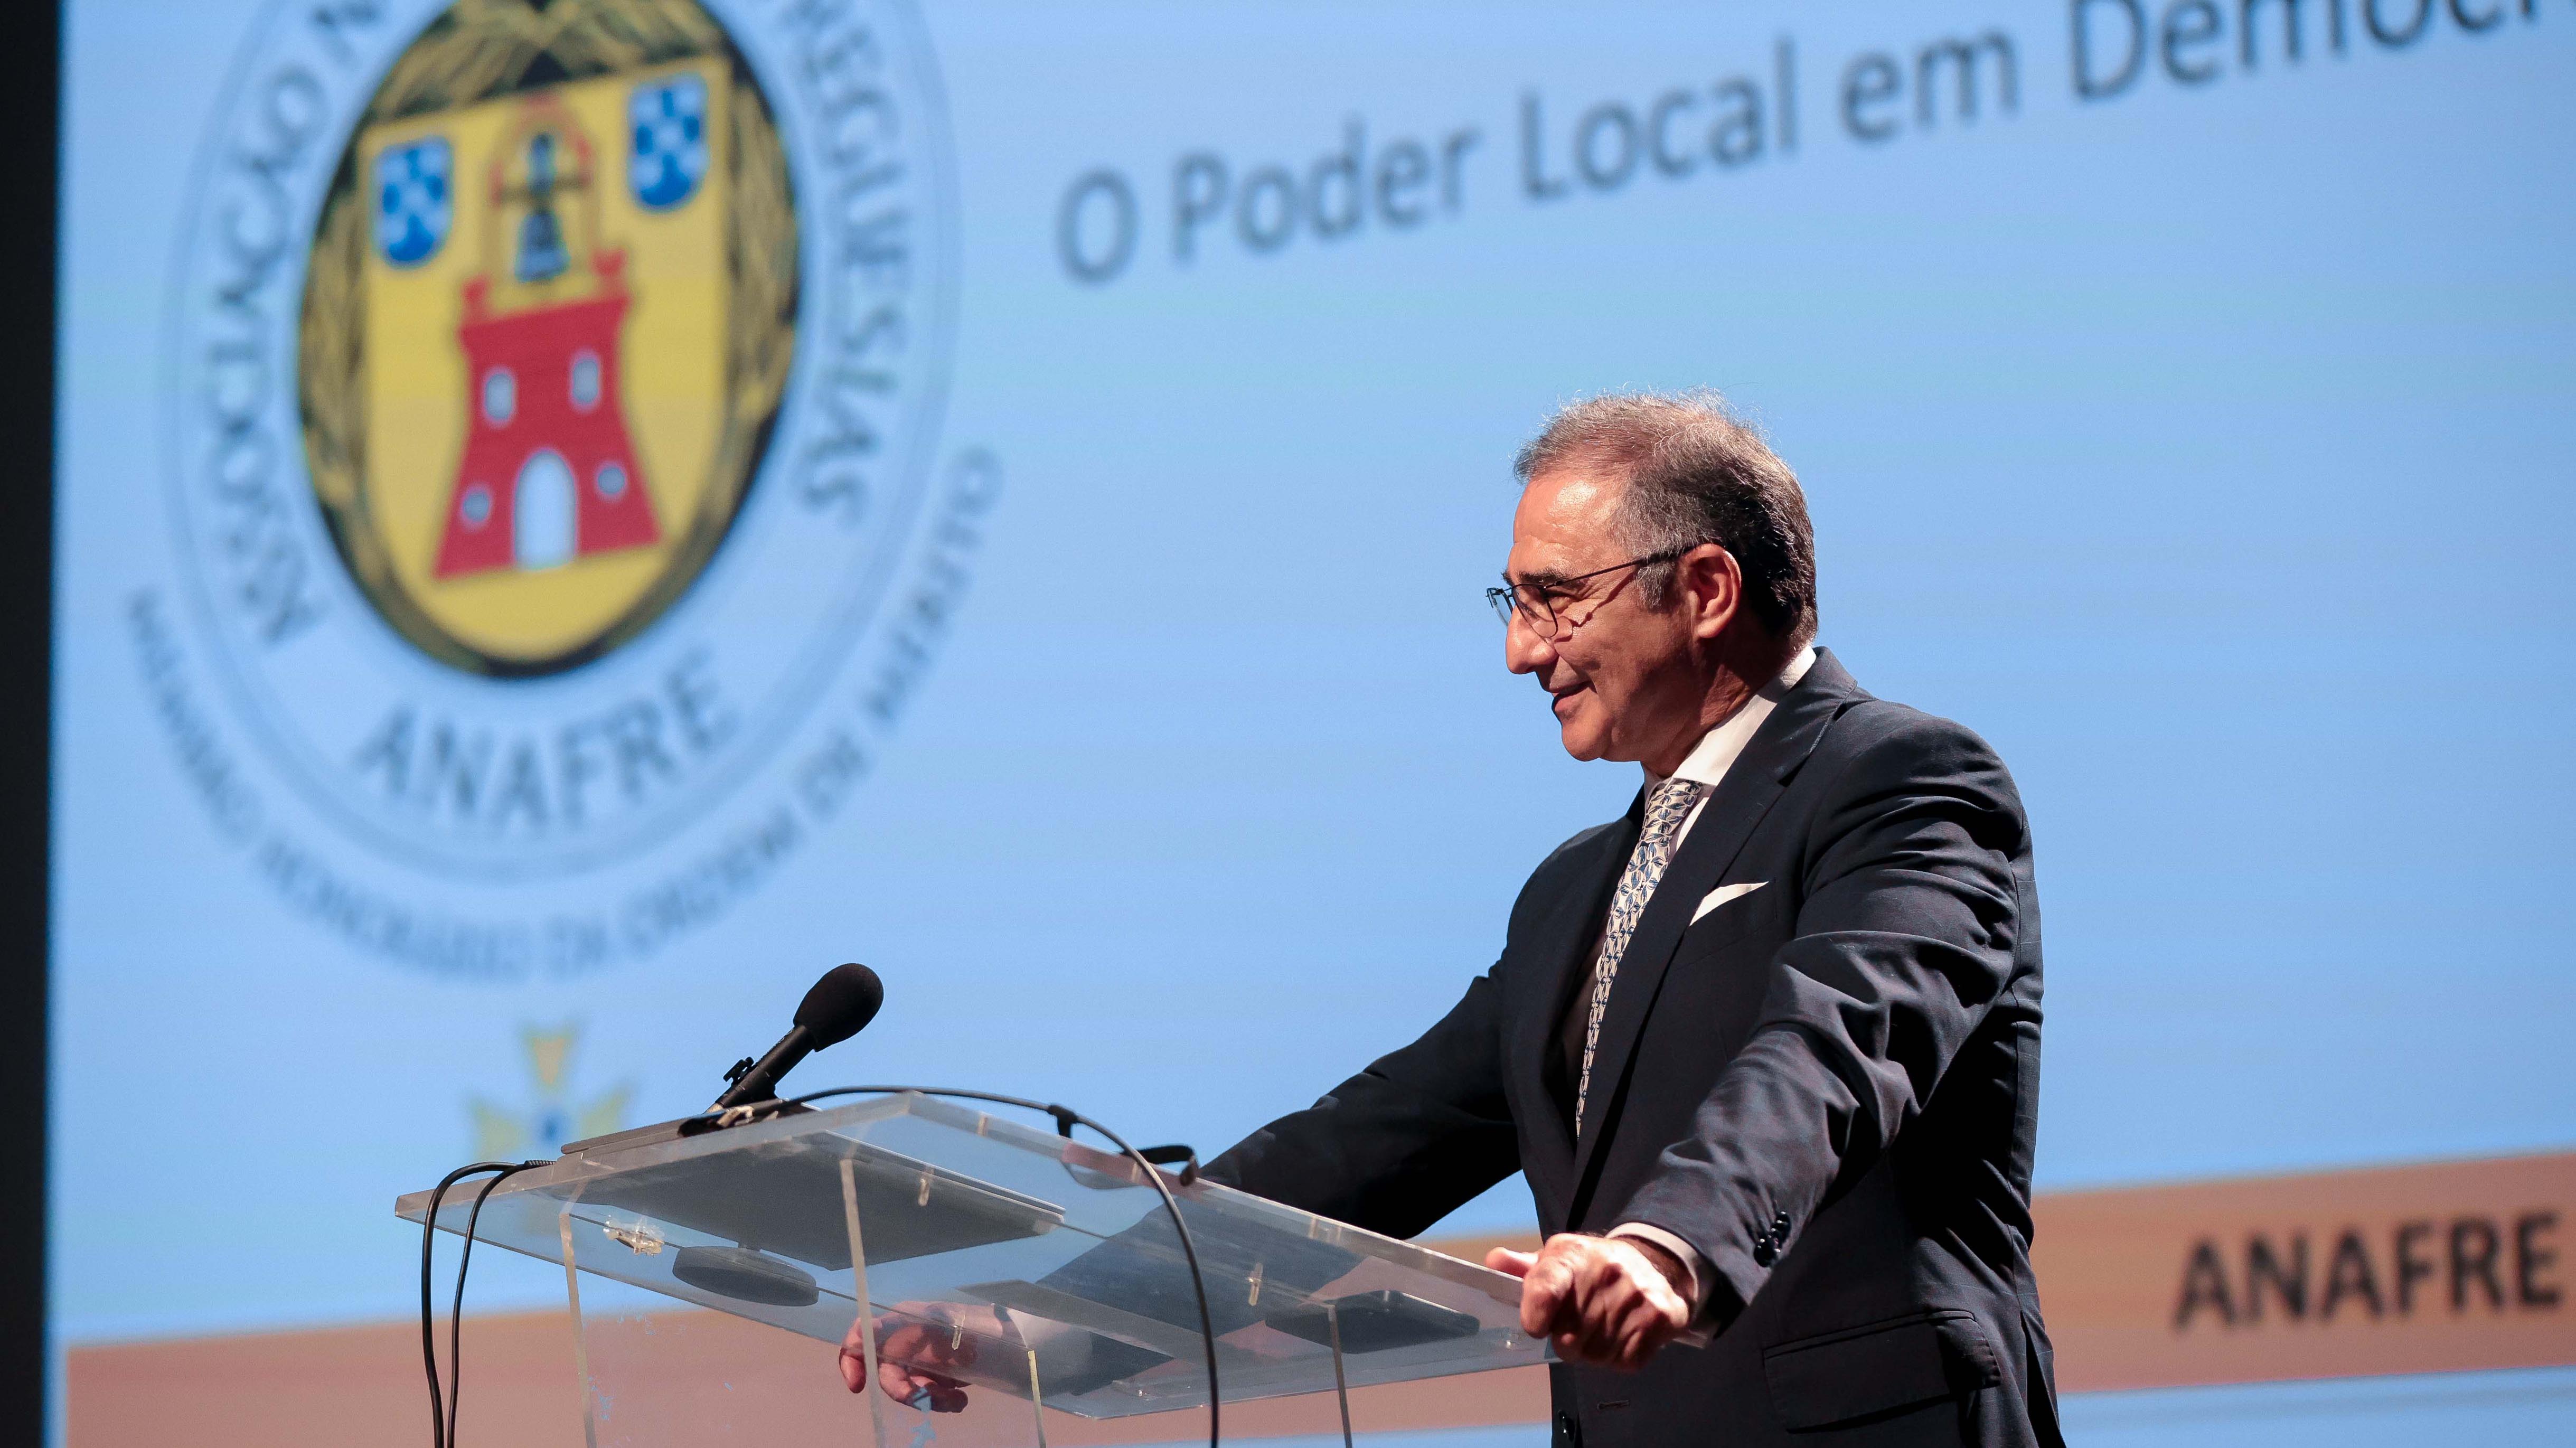 José Manuel Bolieiro enaltece “reflexão conjunta” sobre poder local promovida pela ANAFRE